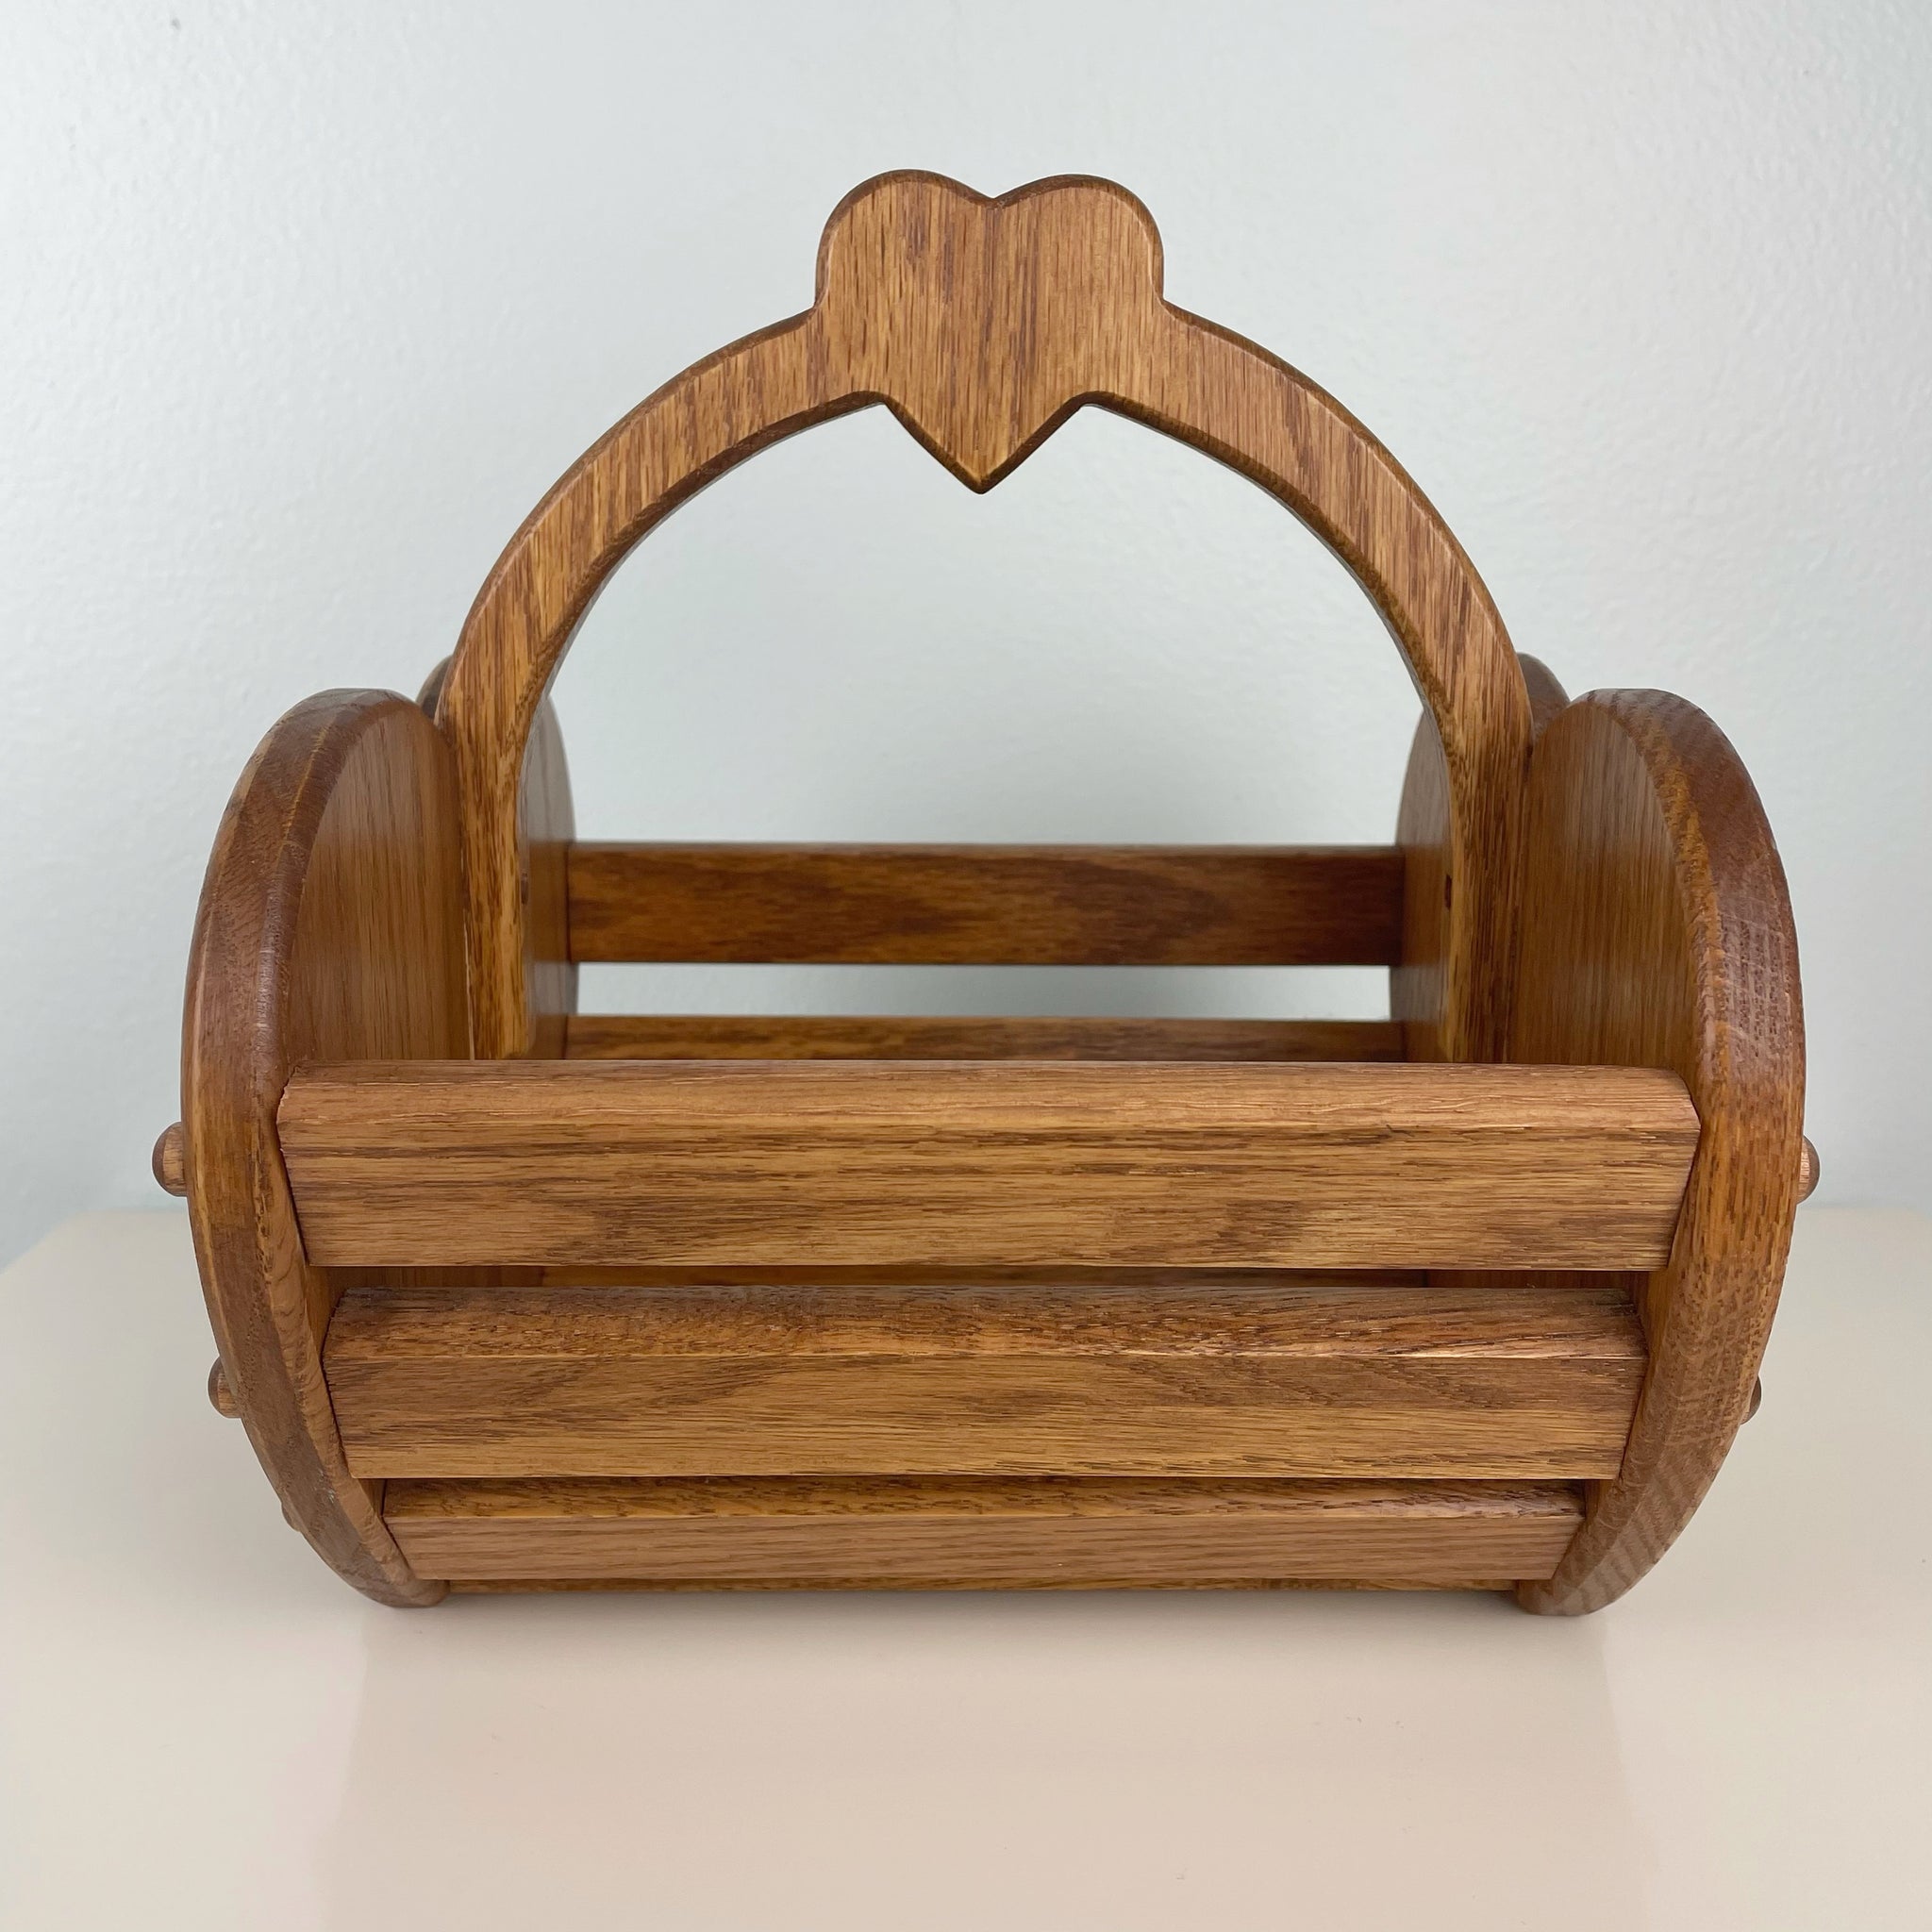 wooden heart basket – old soul goods